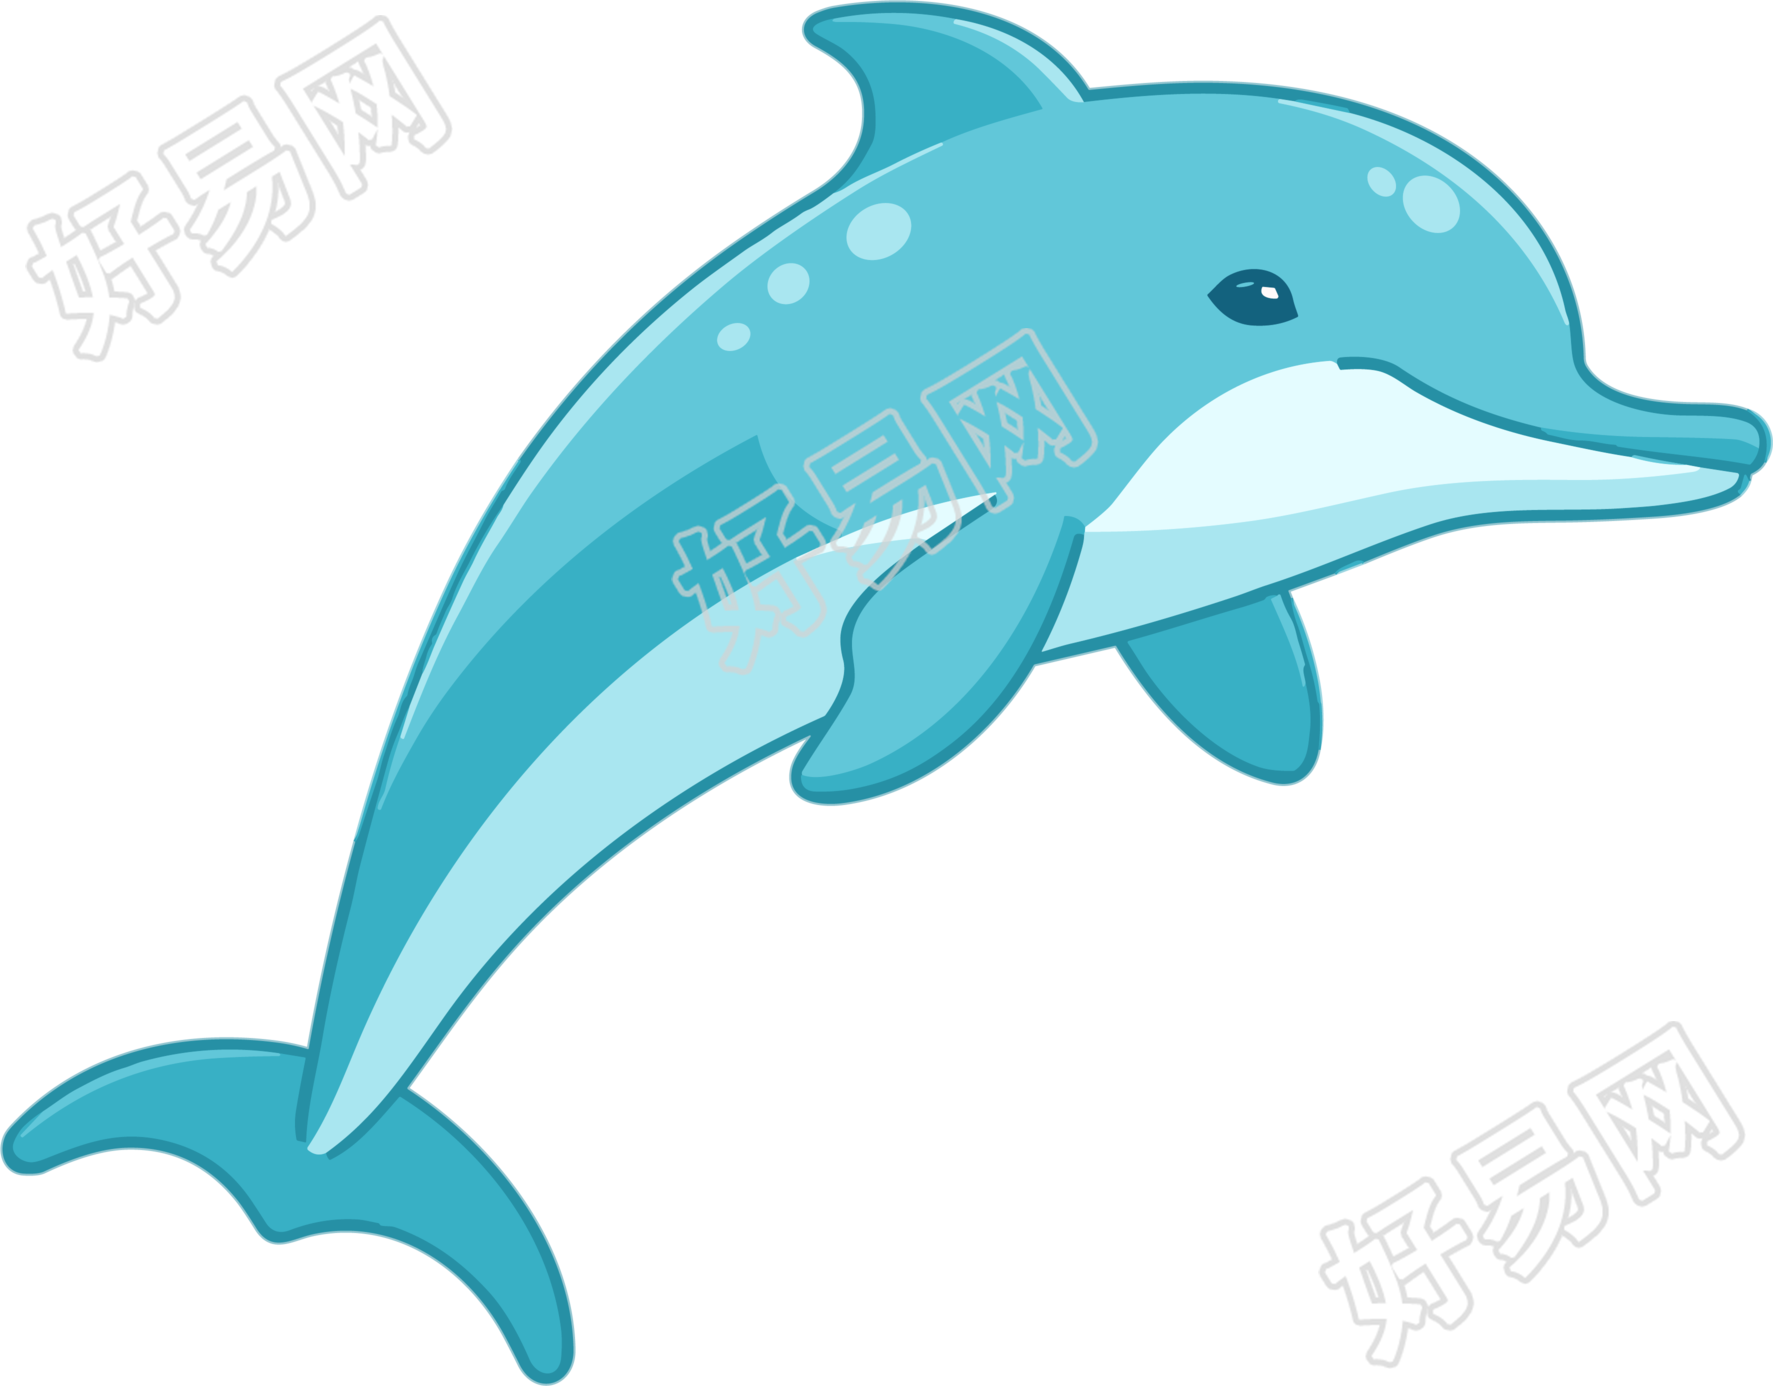 海豚跳跃新免费动物和可爱图标元素